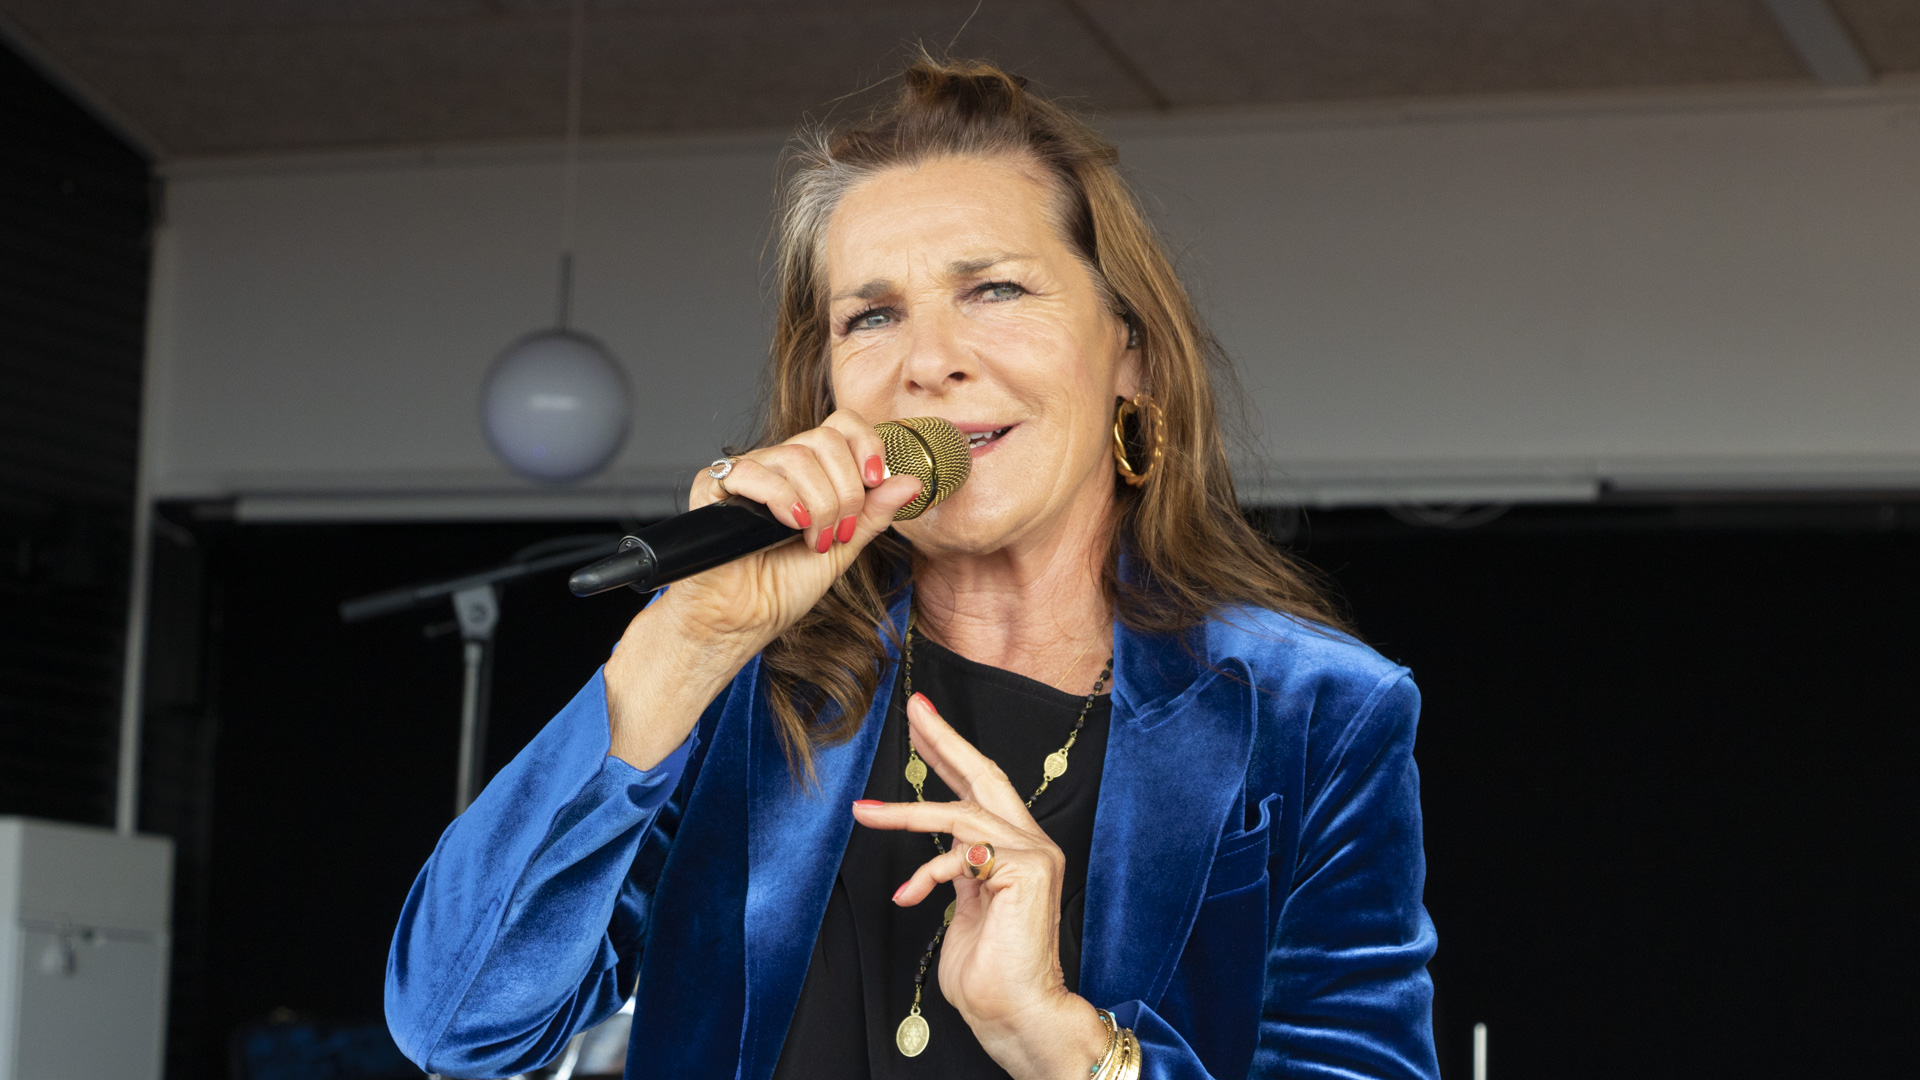 Koncert med Lis Sørensen ved Frikadellefest i Lohals på Langeland